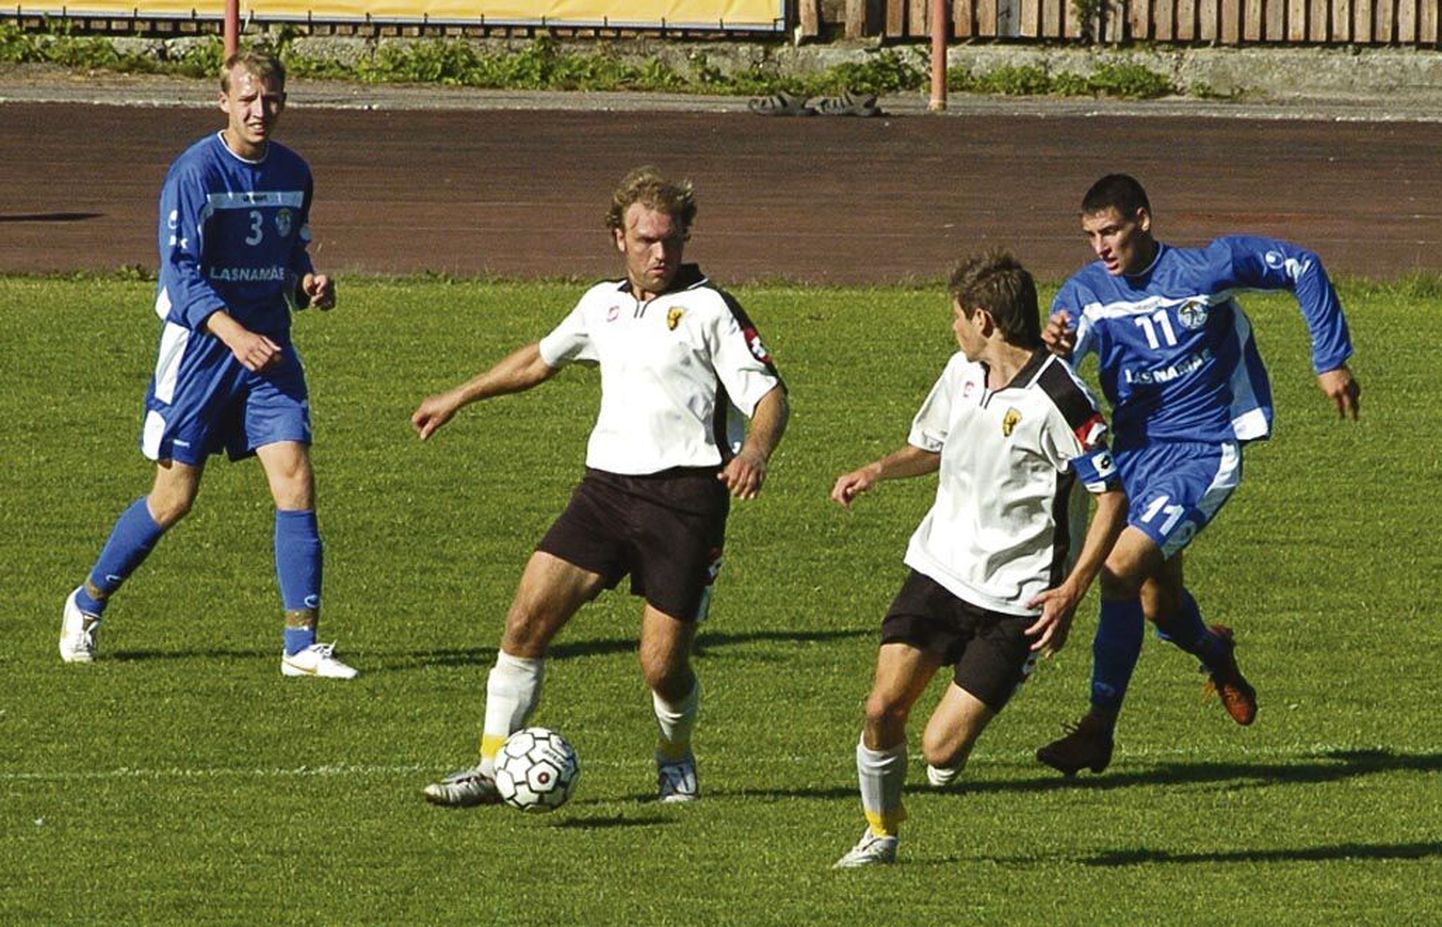 Viimati pallis Pärnu esindusmeeskond Vapruse (pildil valges) nime all meistriliigas 2008. aastal, kui liigas saadi üheksas koht.